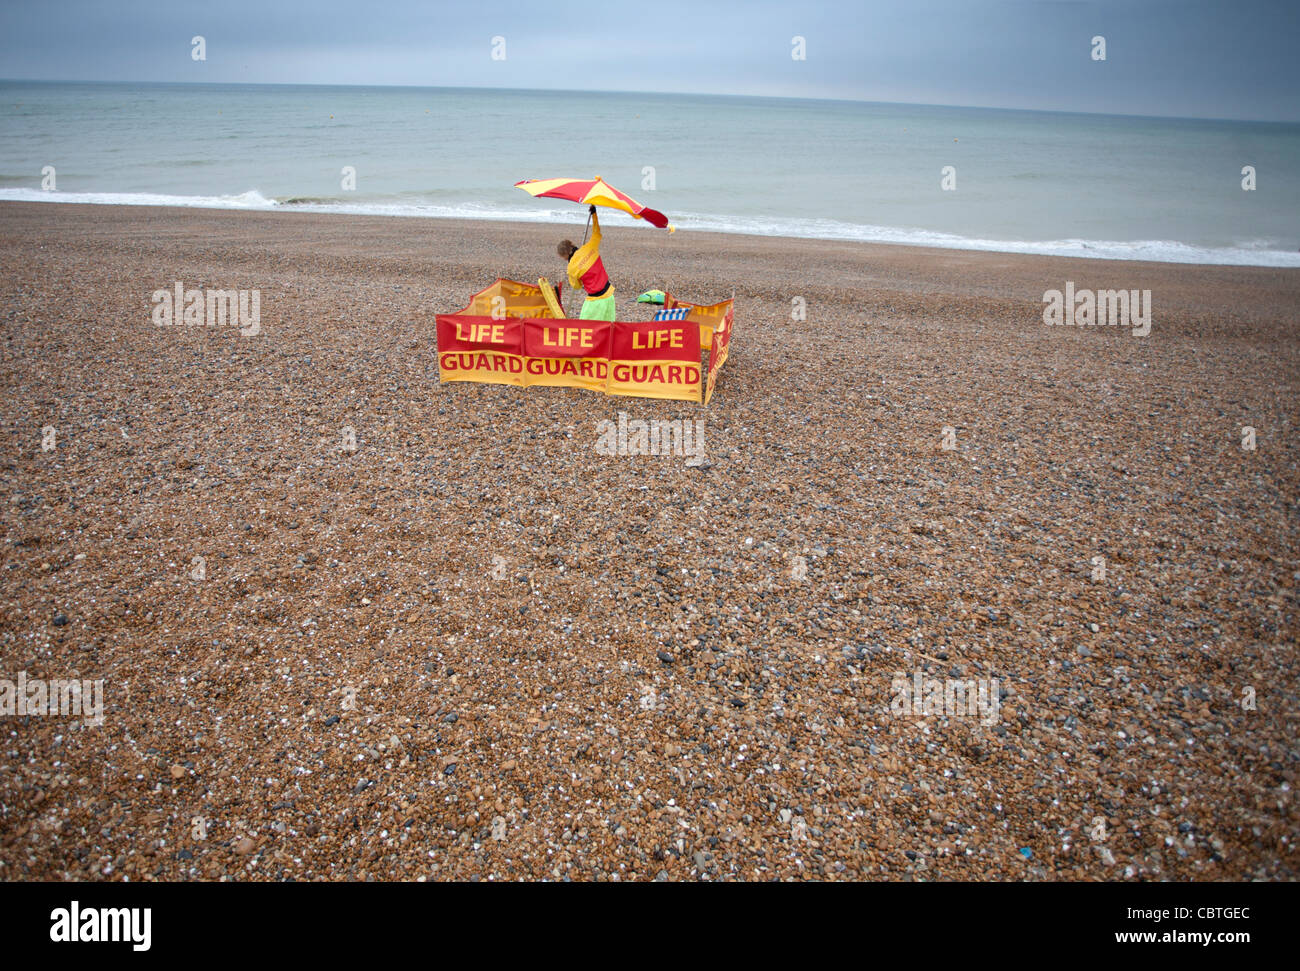 Un bagnino imposta la sua posizione su una spiaggia deserta. Foto di James Boardman. Foto Stock